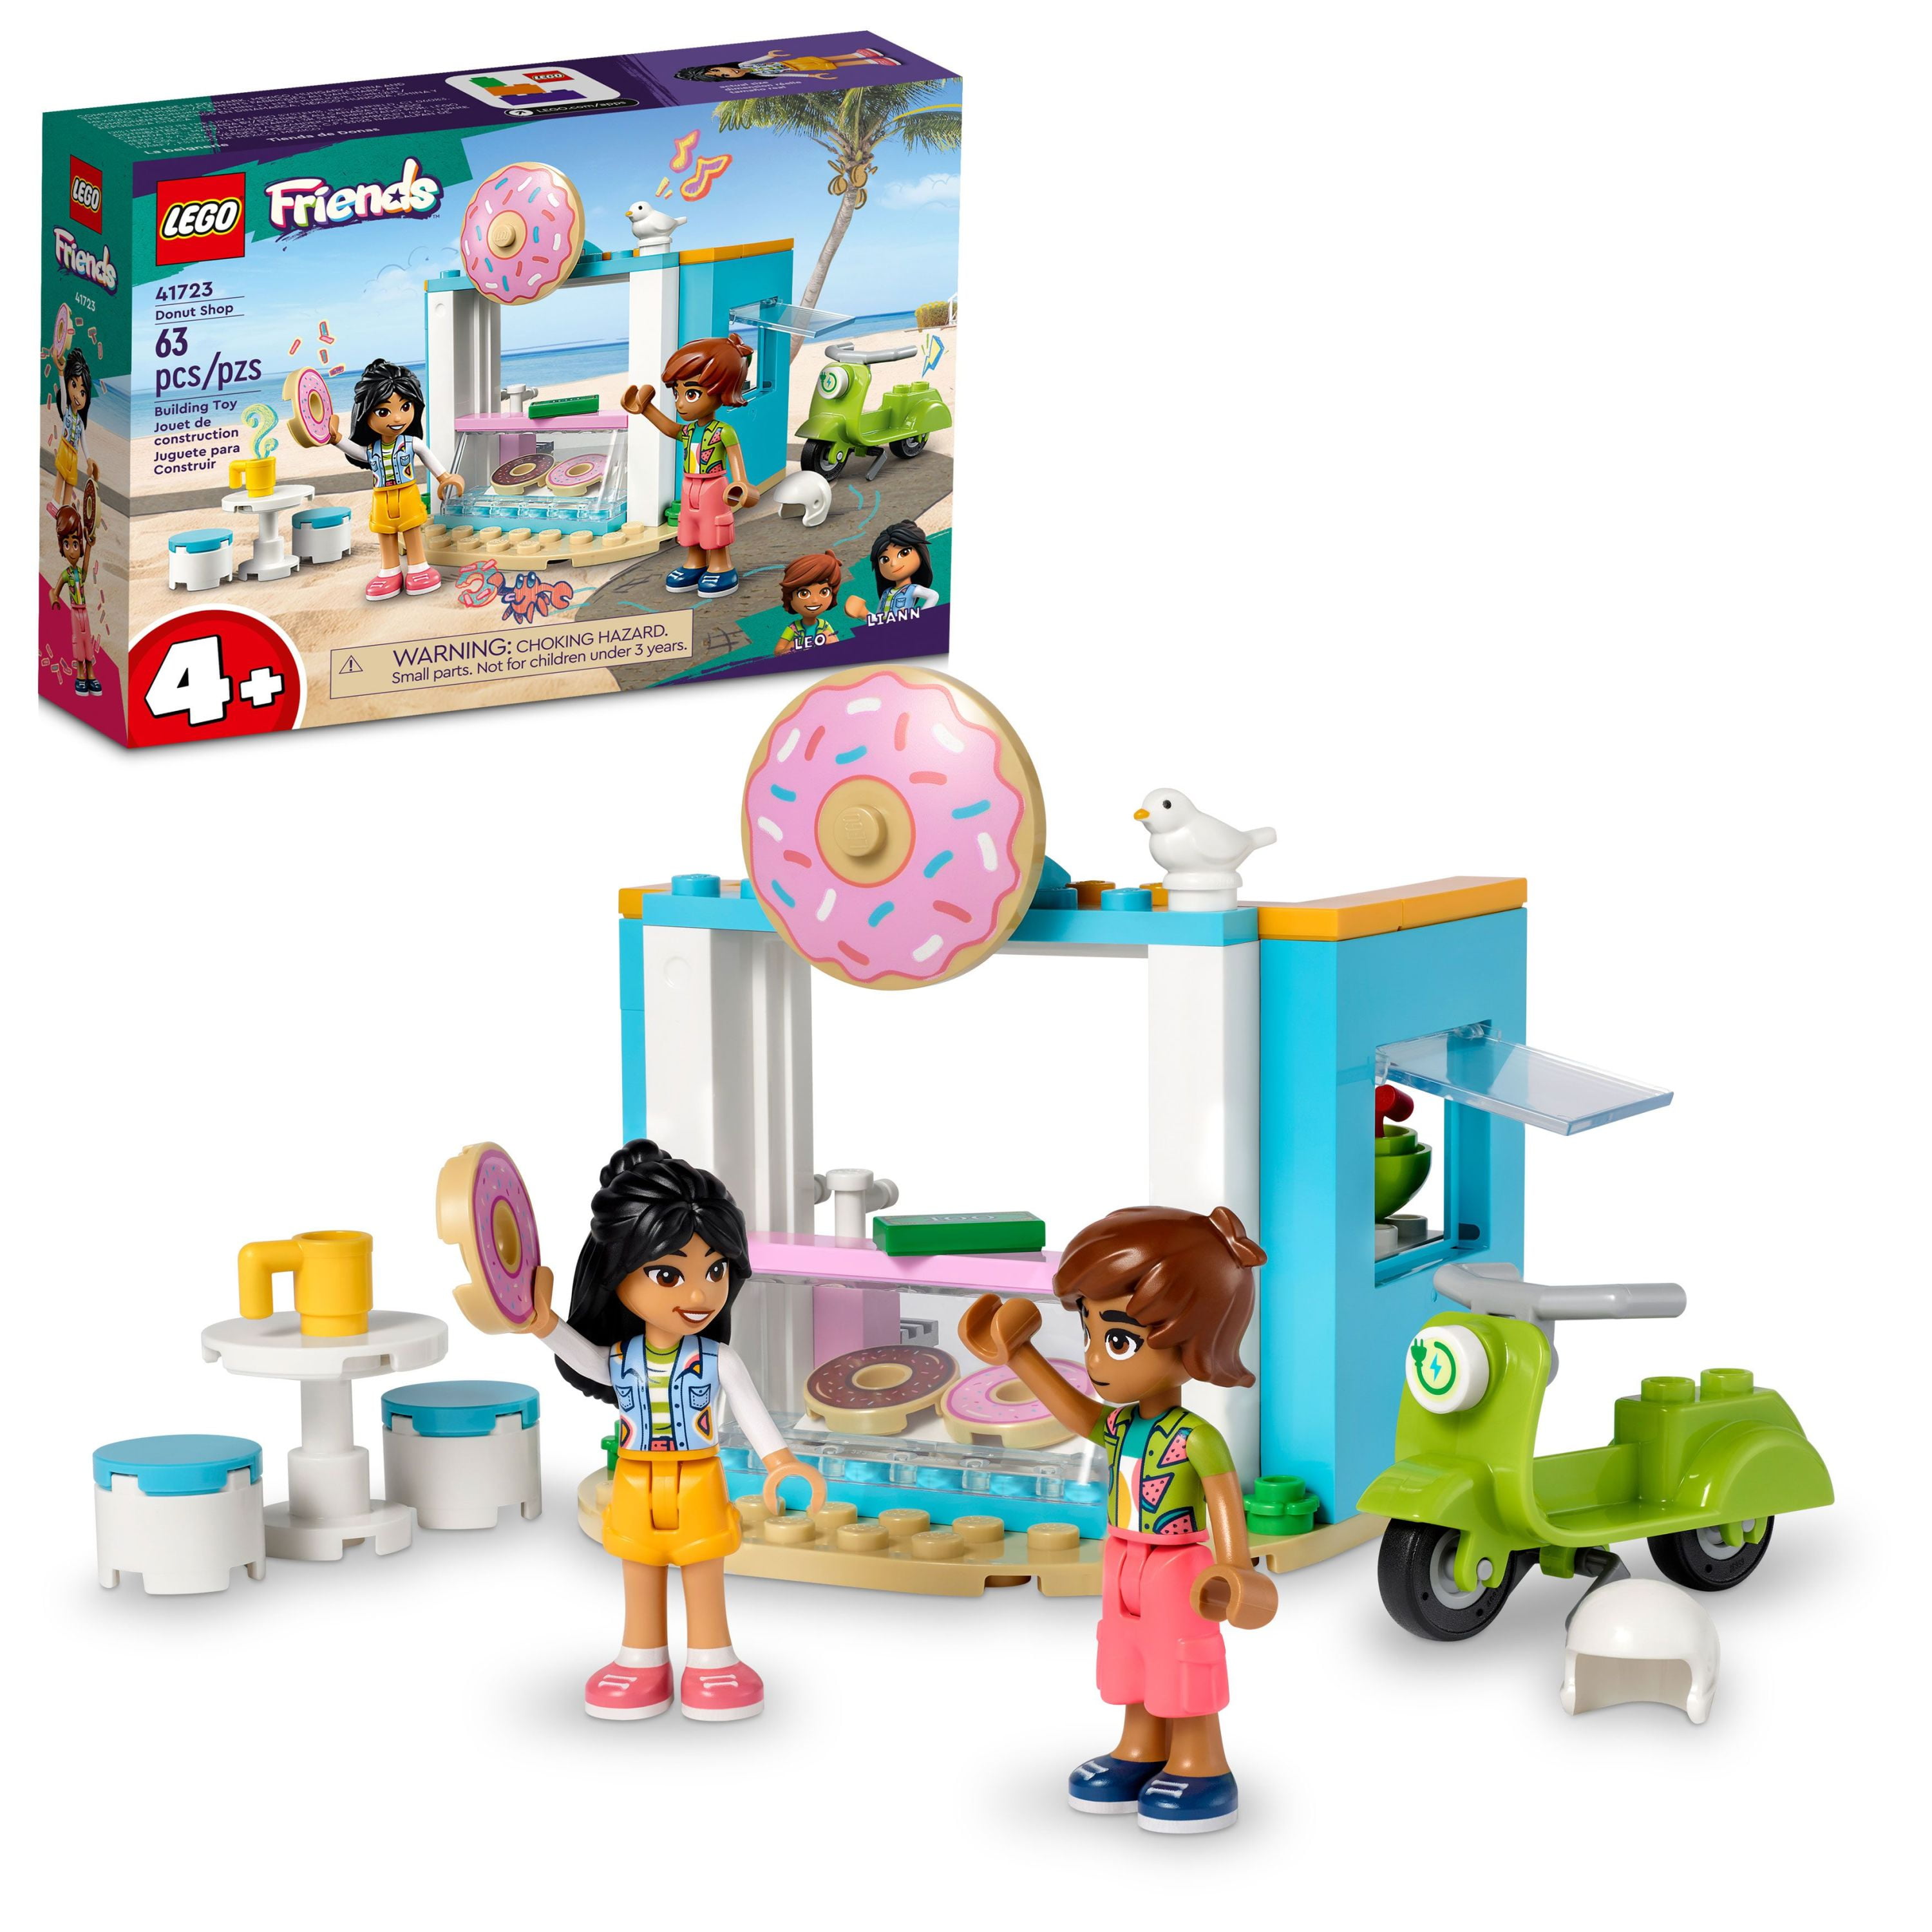 Friends Doughnut Shop Toy Playset - Walmart.com